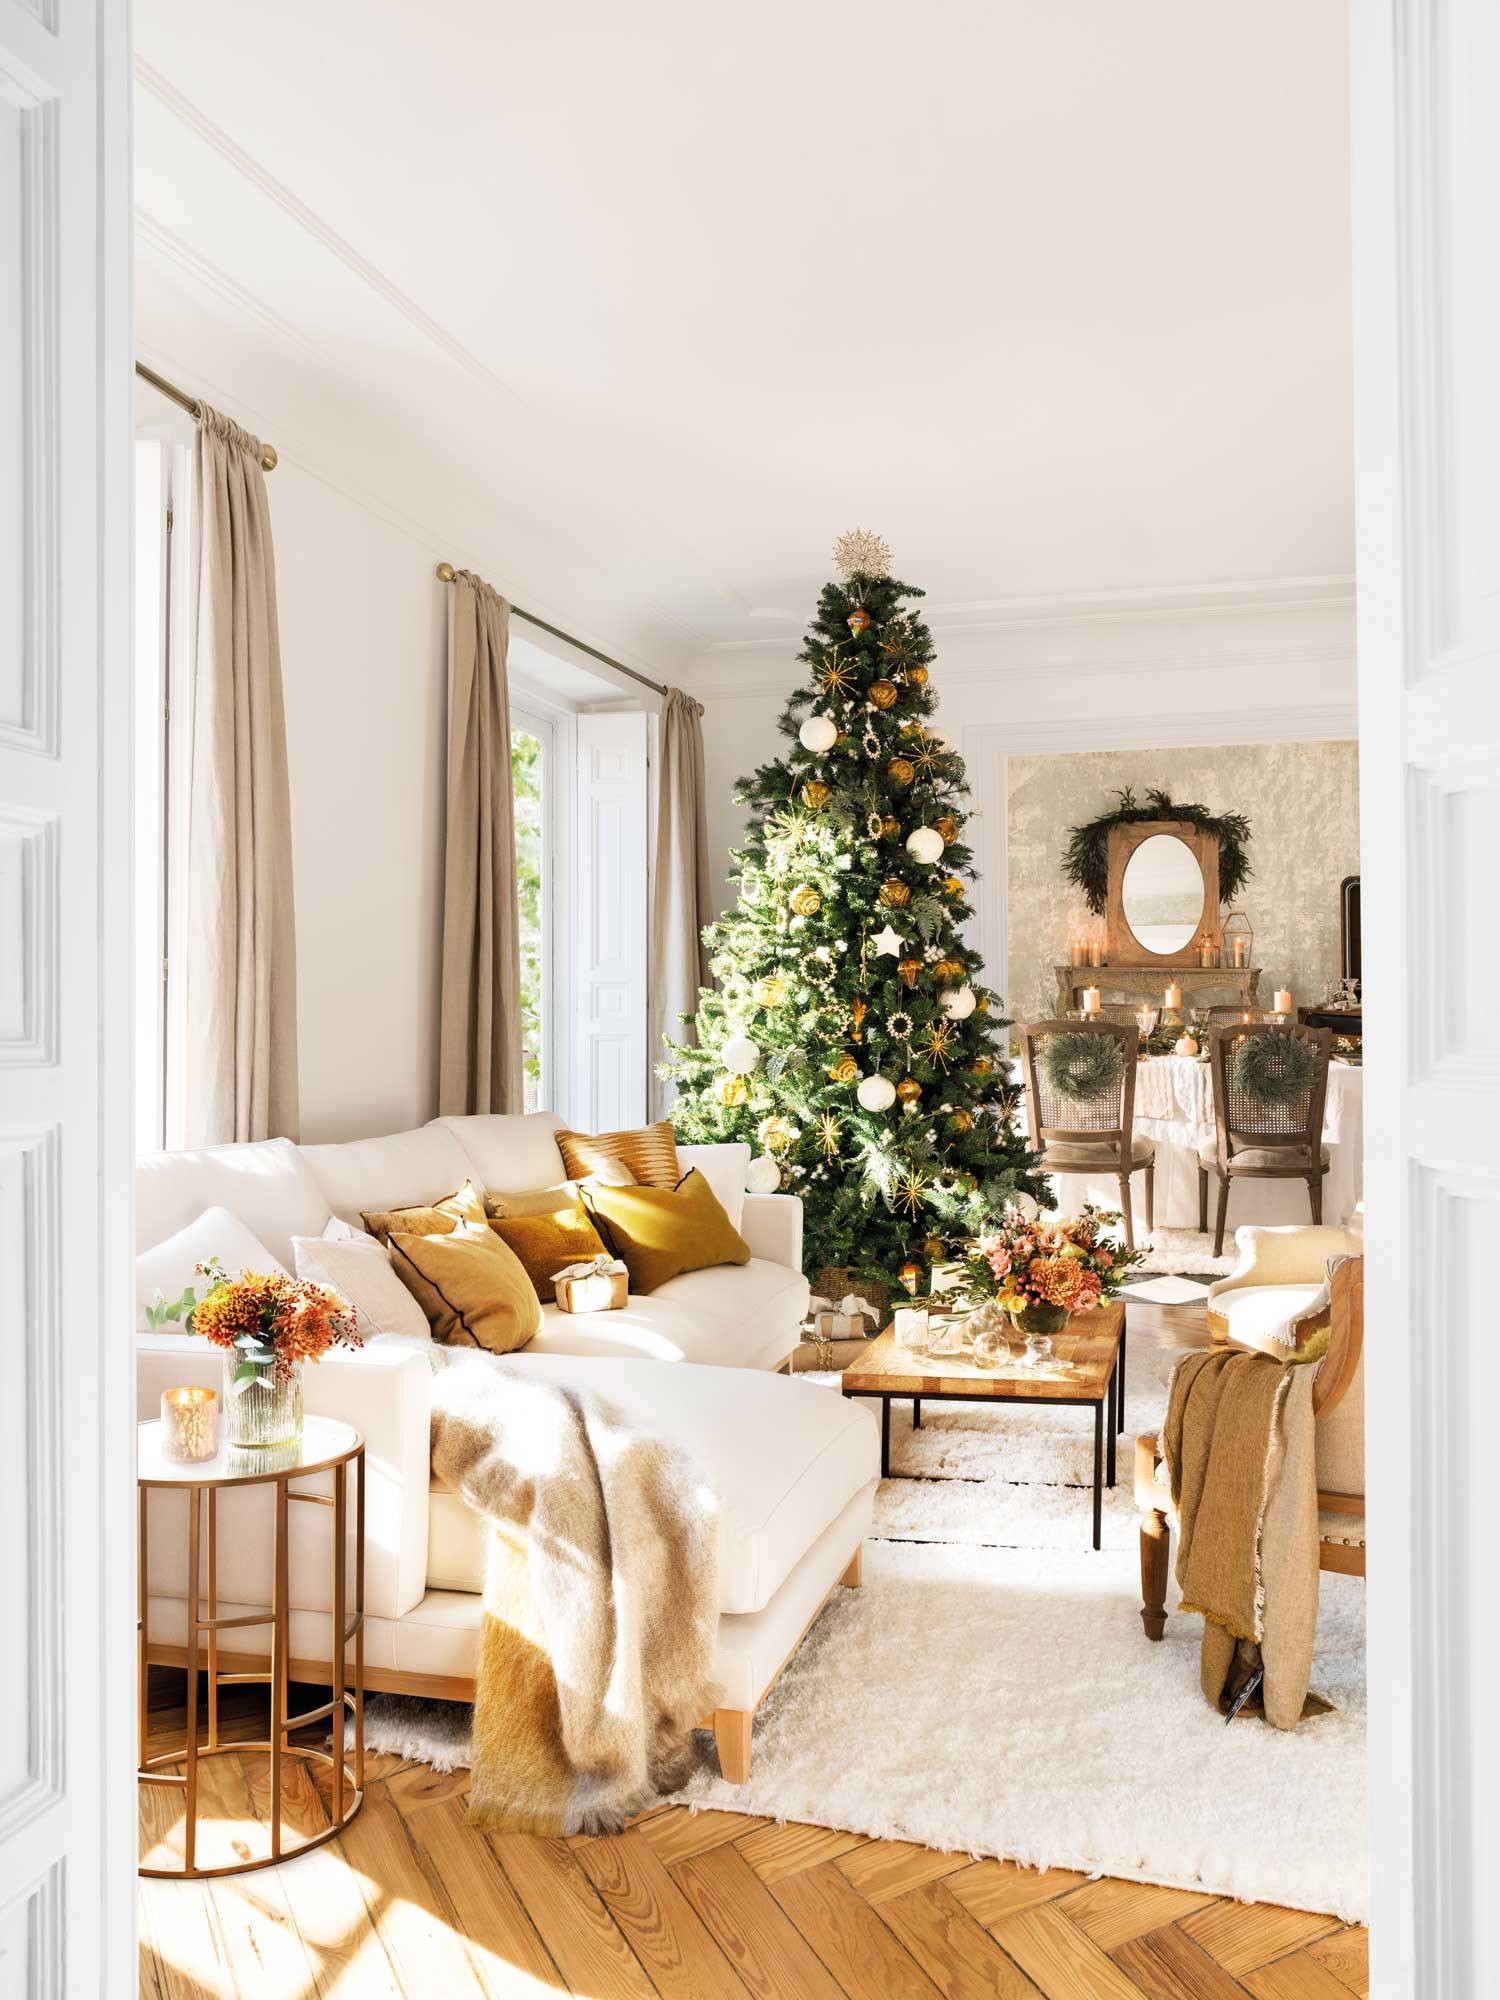 Salón de la casa de Marta Hazas con decoración de Navidad 00515371